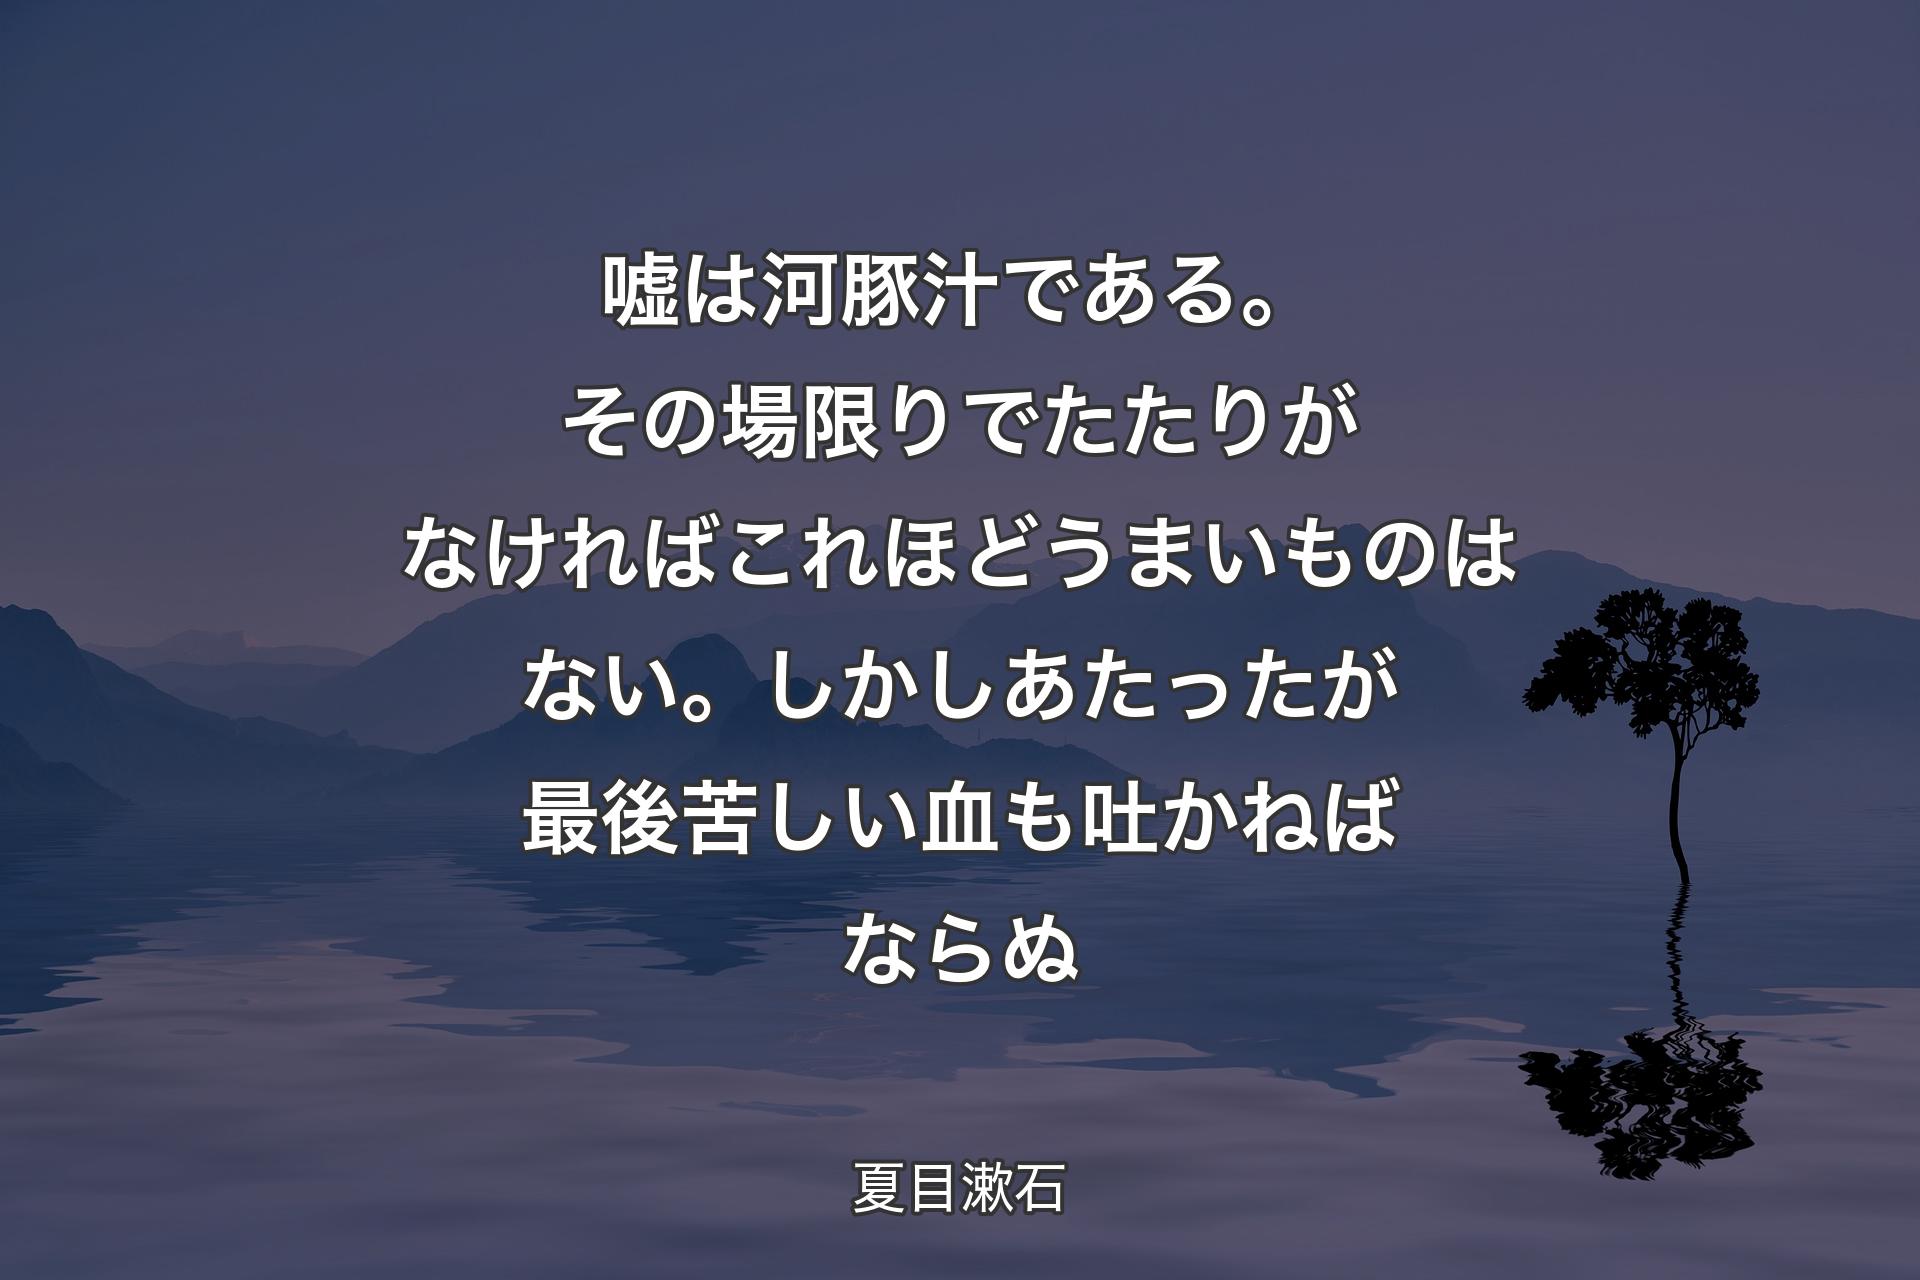 【背景4】嘘は河豚汁である。その場限りでたたりがなければこれほどうまいものはない。しかしあたったが最後苦しい血も吐かねばならぬ - 夏目漱石